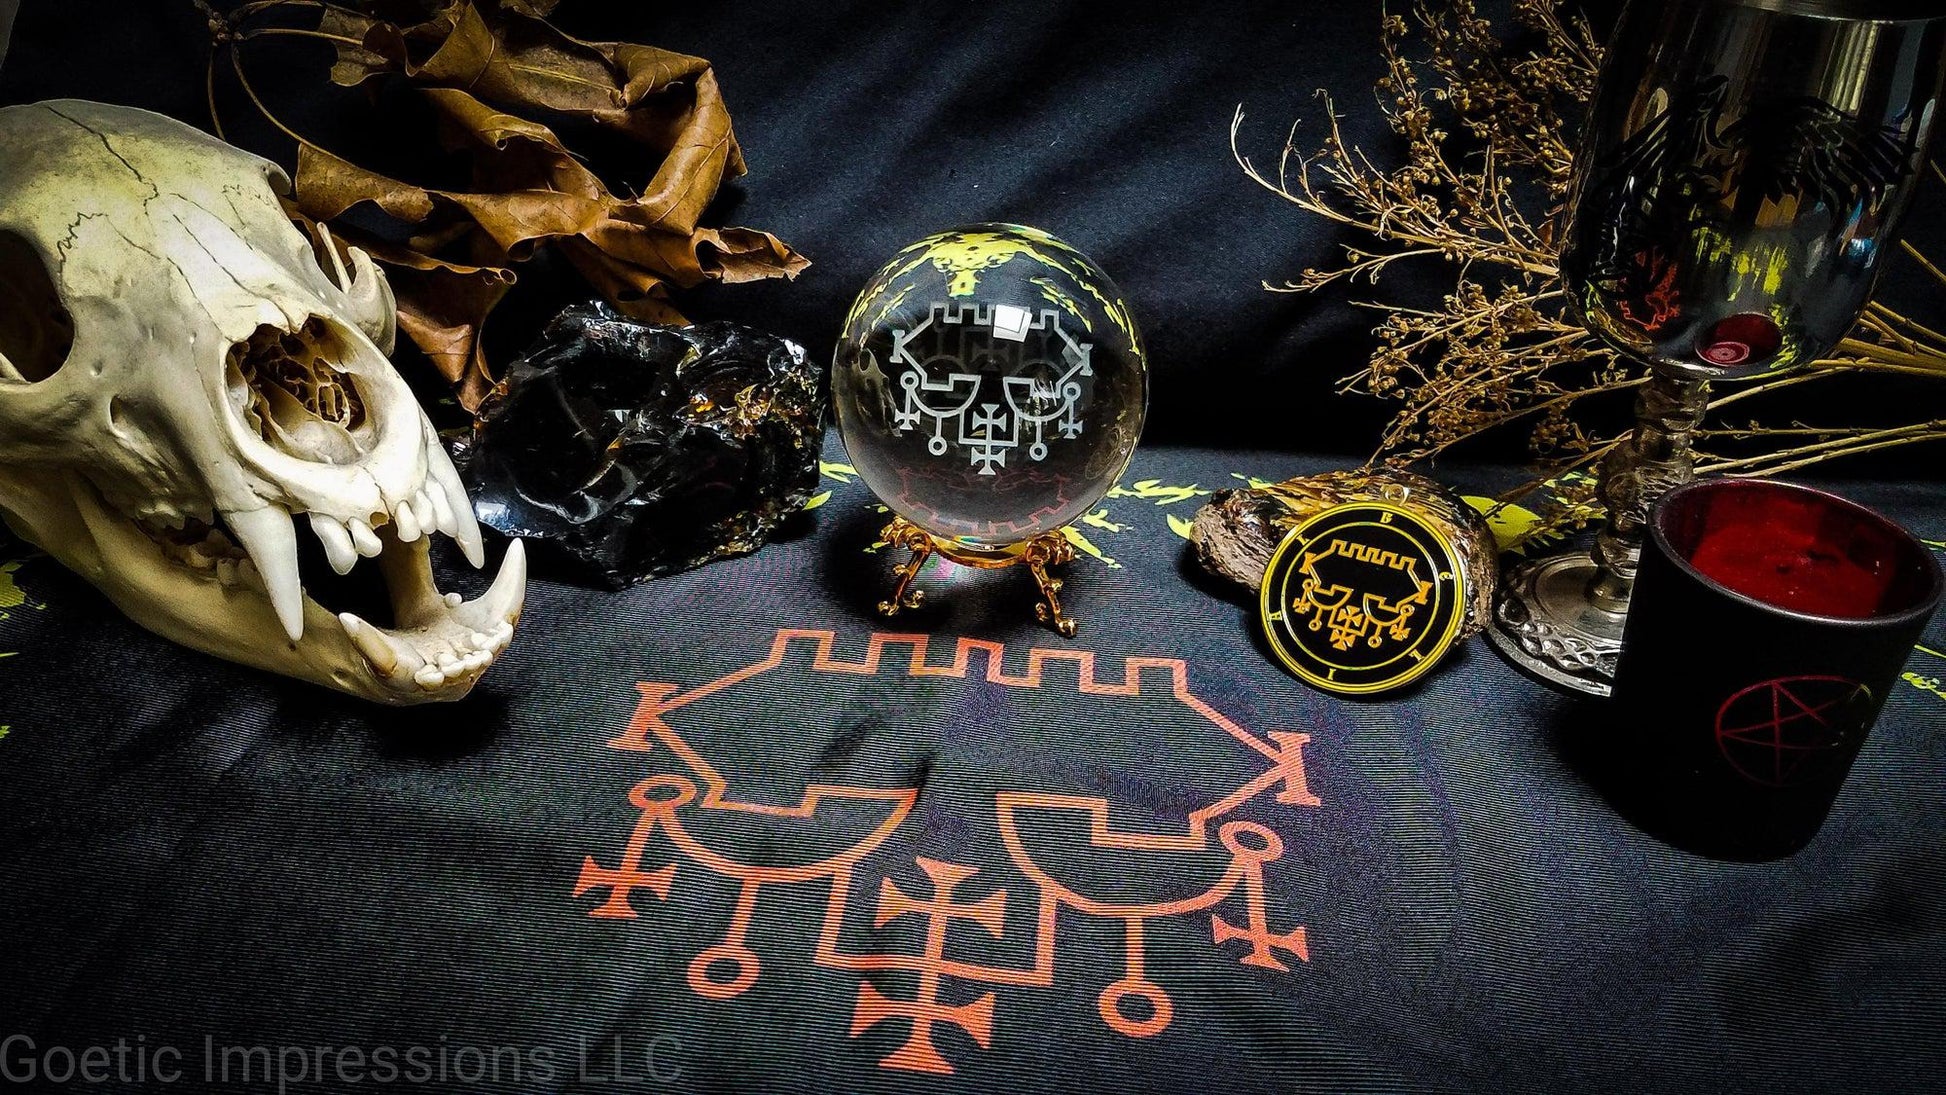 Belial altar setup with altar cloth, medallion and crystal ball